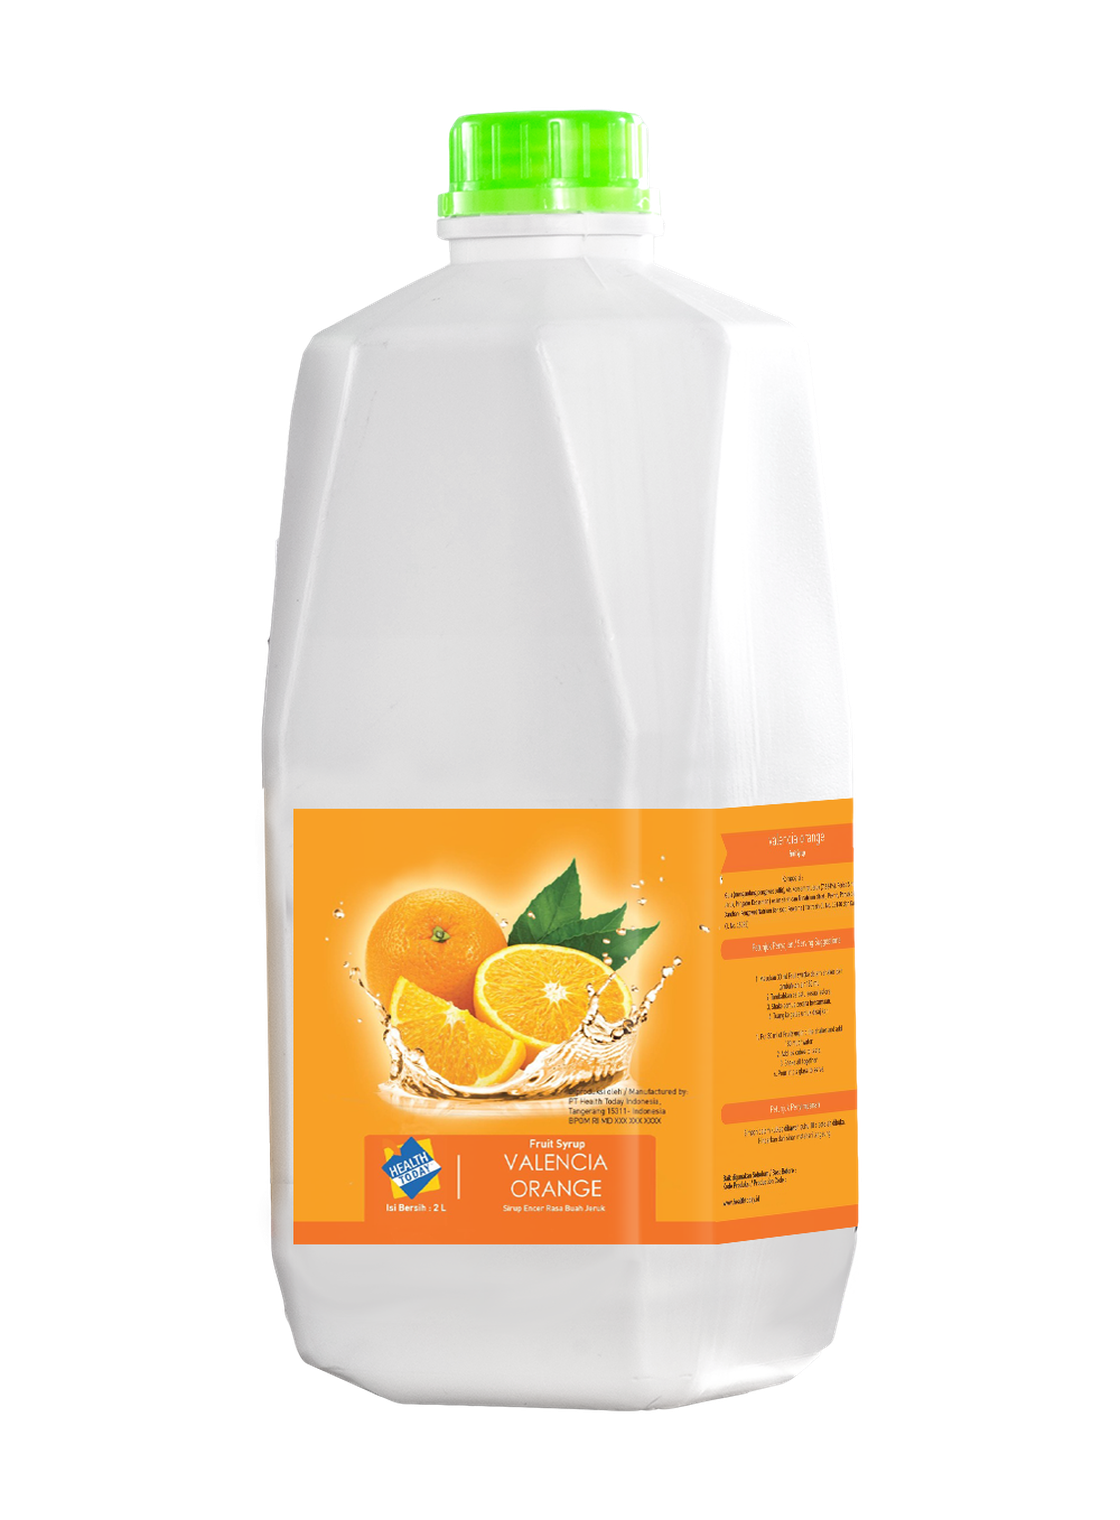 30 ml Health Today Valencia Orange Fruit Mix